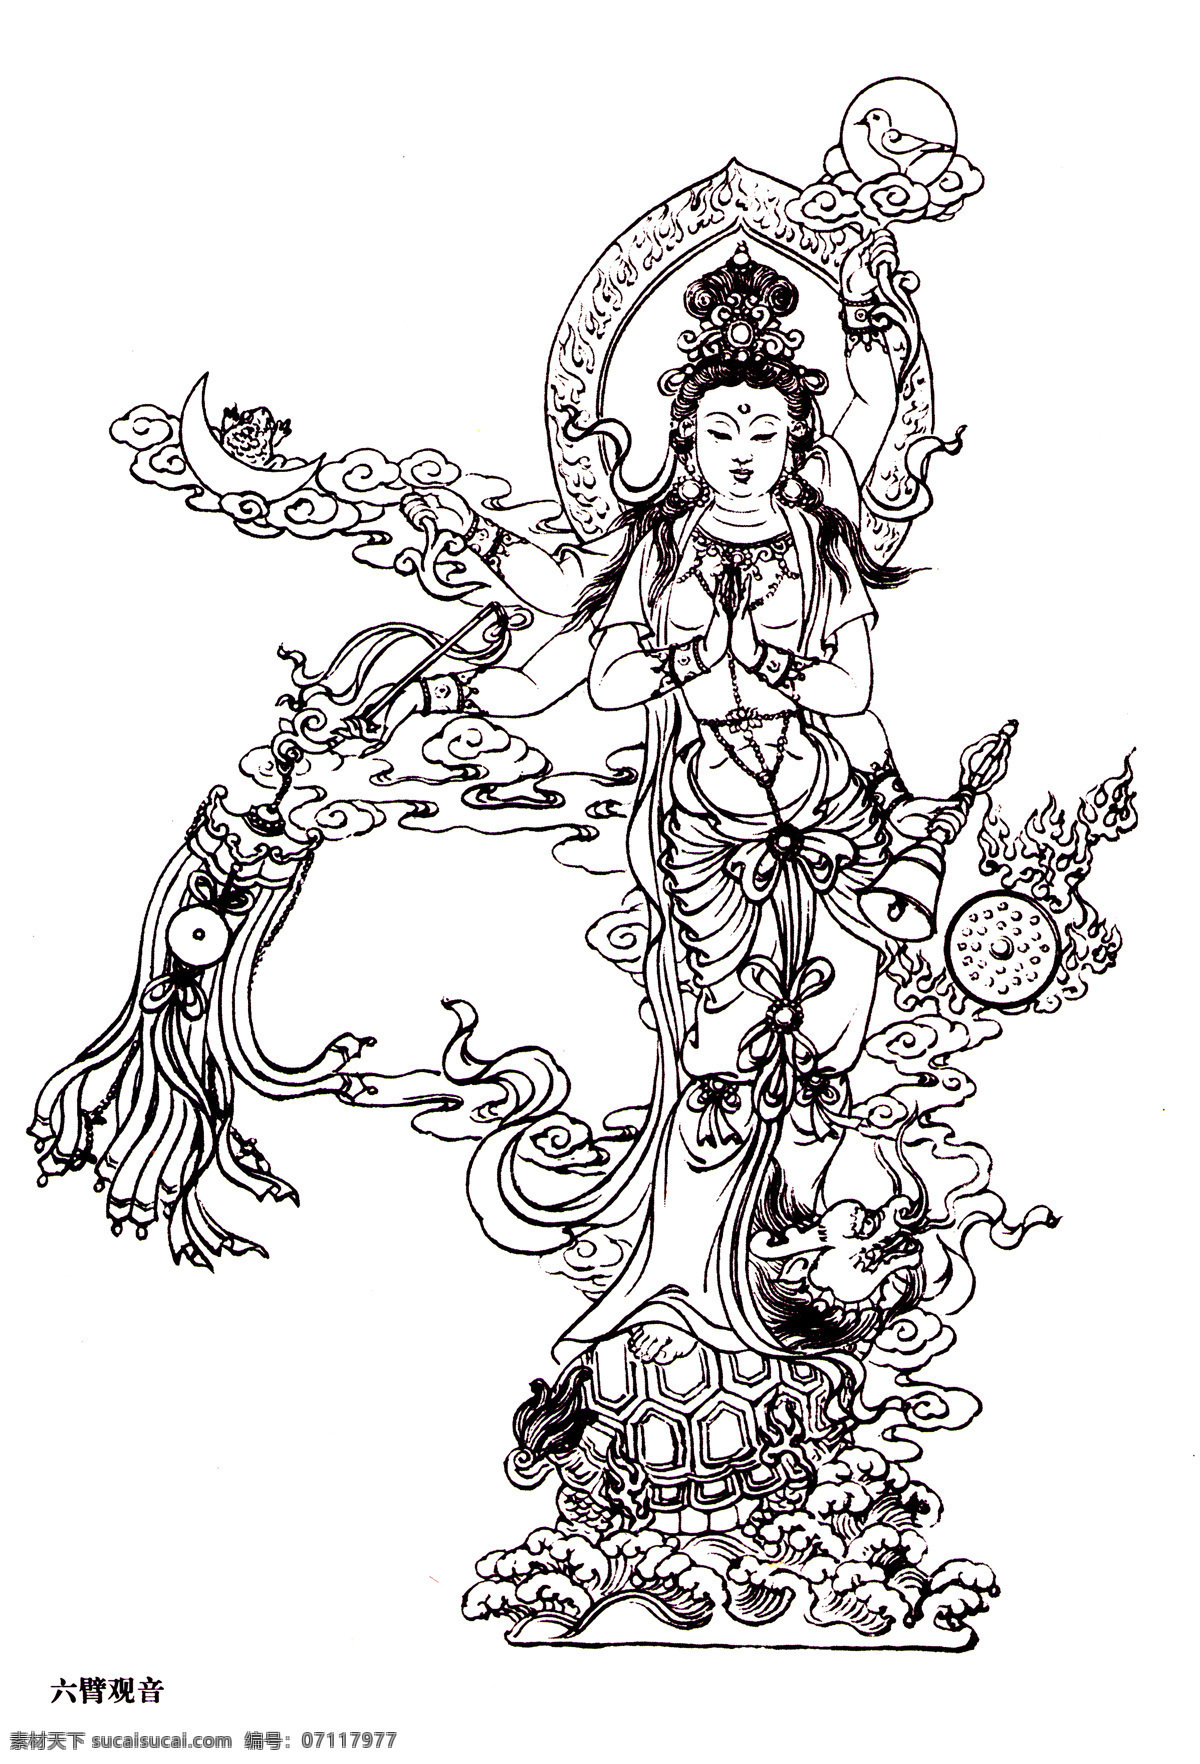 六臂观音 工笔白描 国画 绘画 线描 仕女 神话 民间故事 传统文化 文化艺术